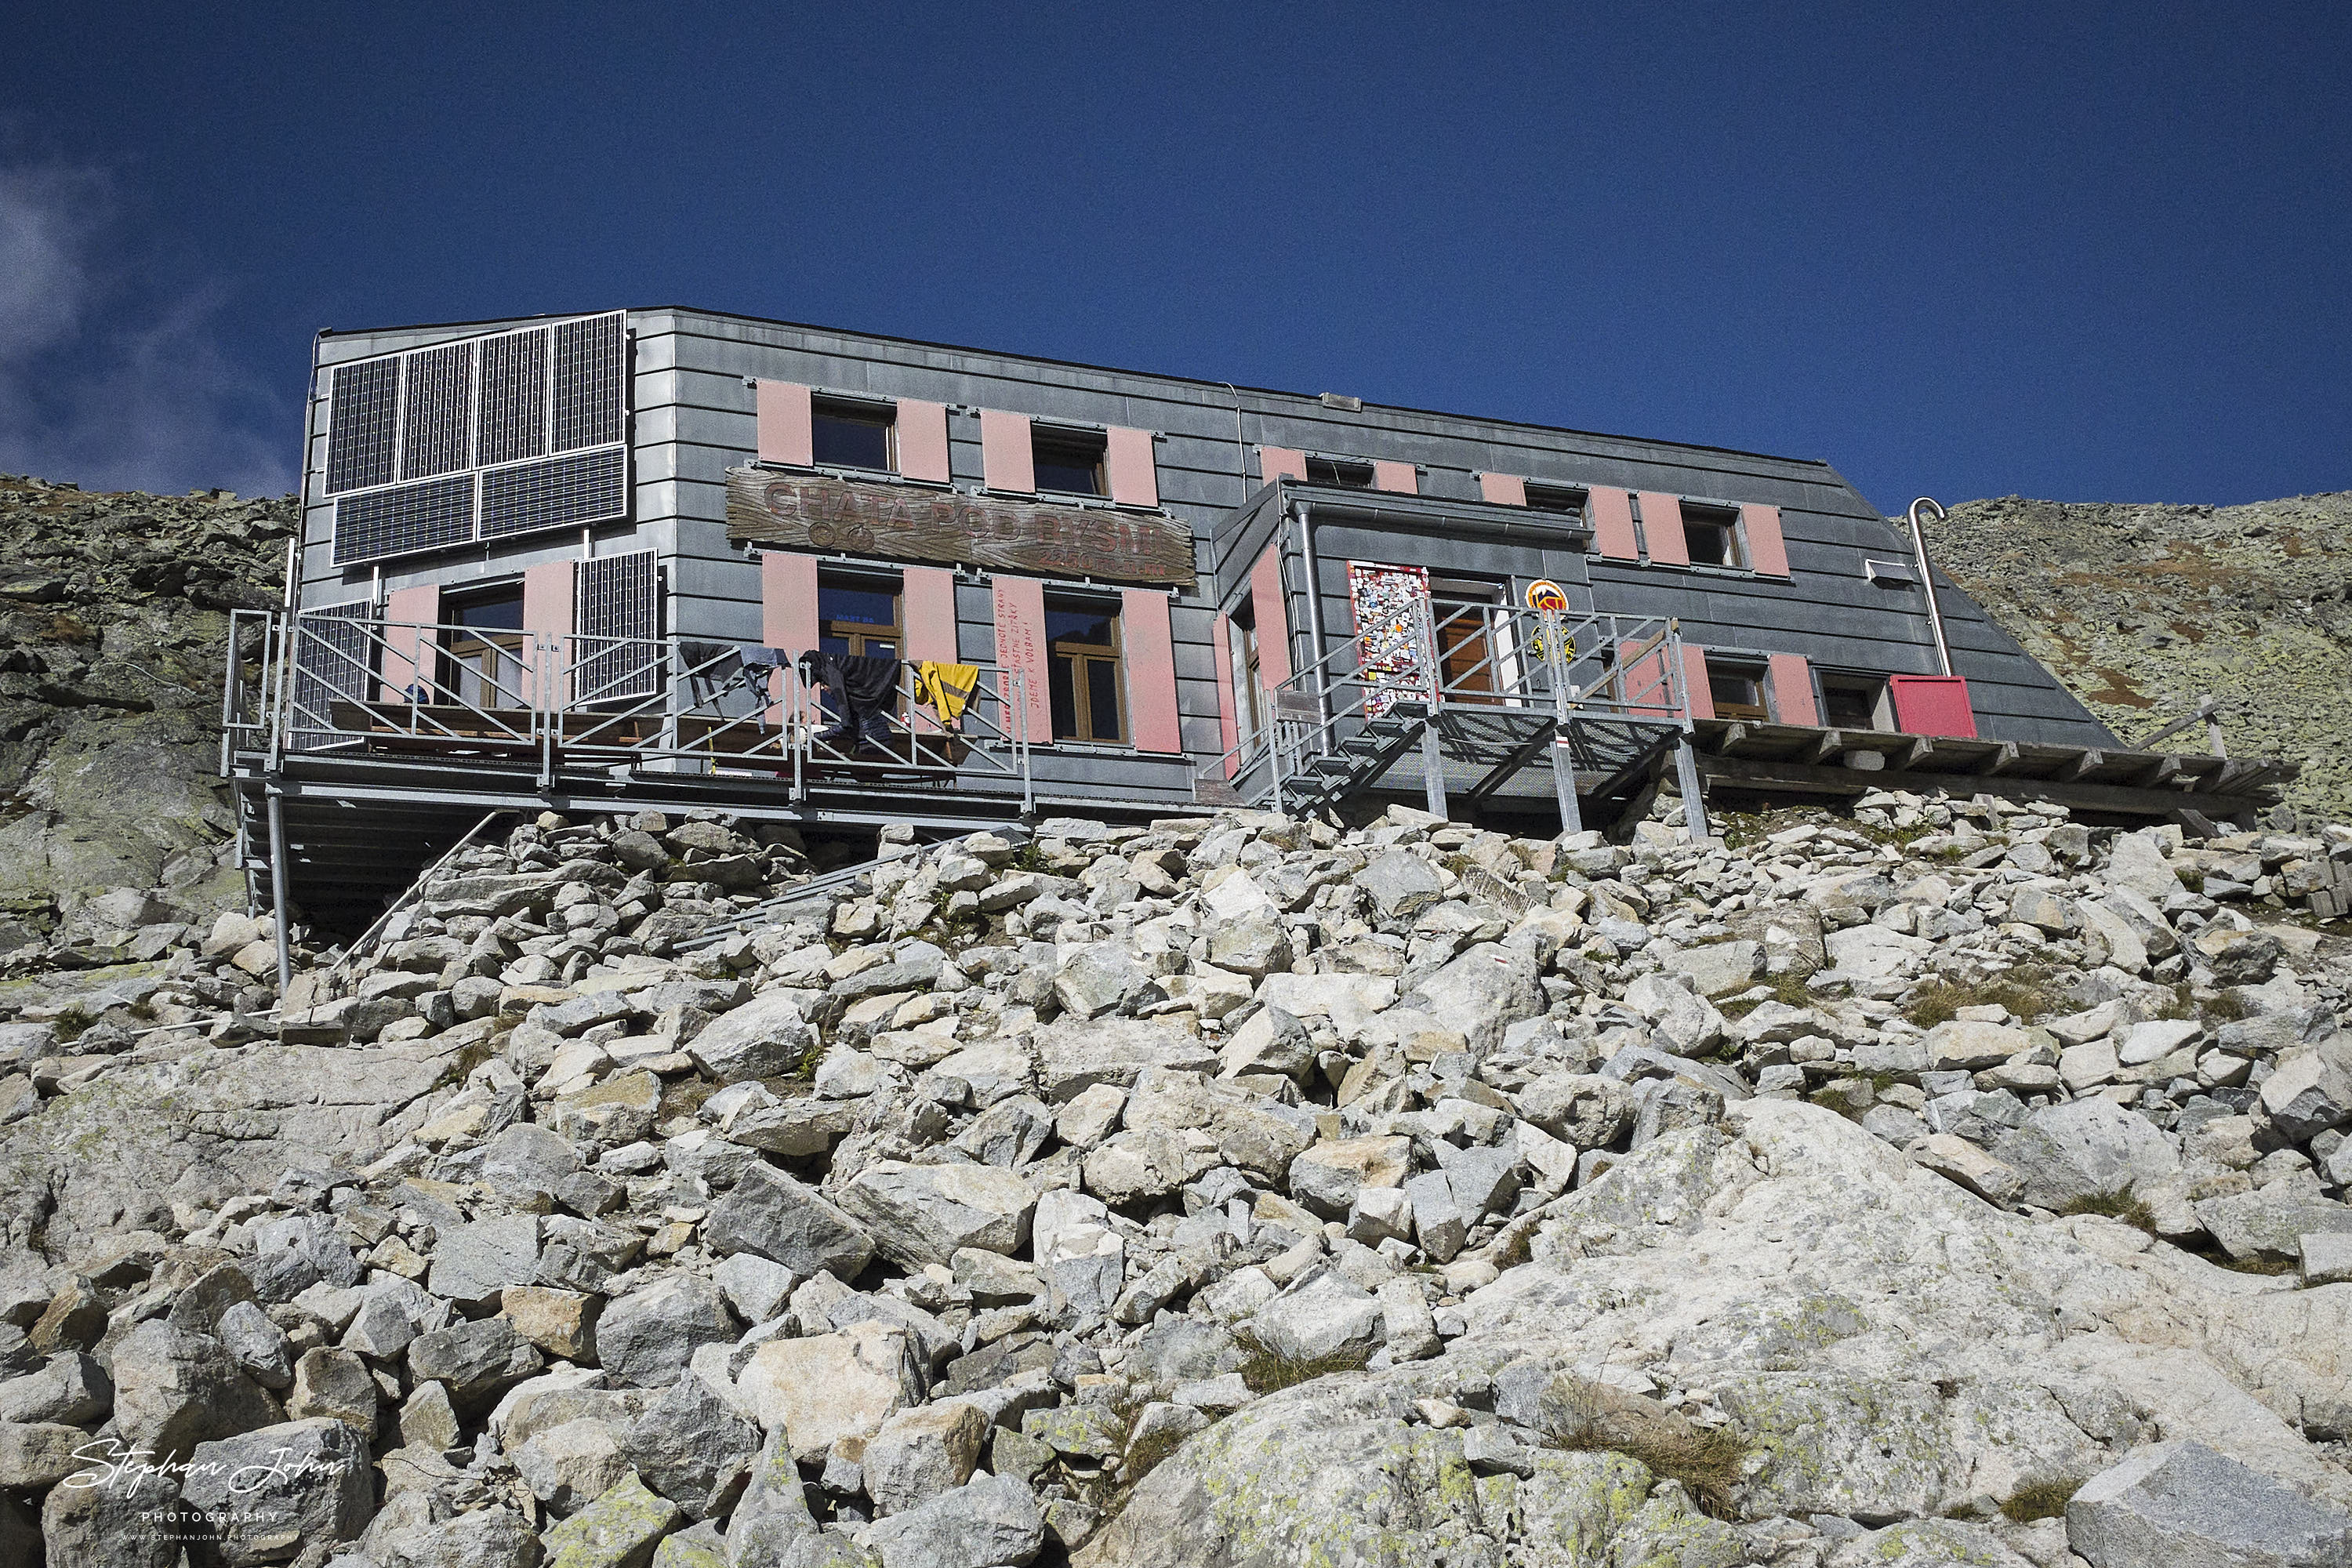 Die Rysy-Hütte (2250 M. ü. NHN) ist die höchstgelegene Hütte in der Hohen Tatra.